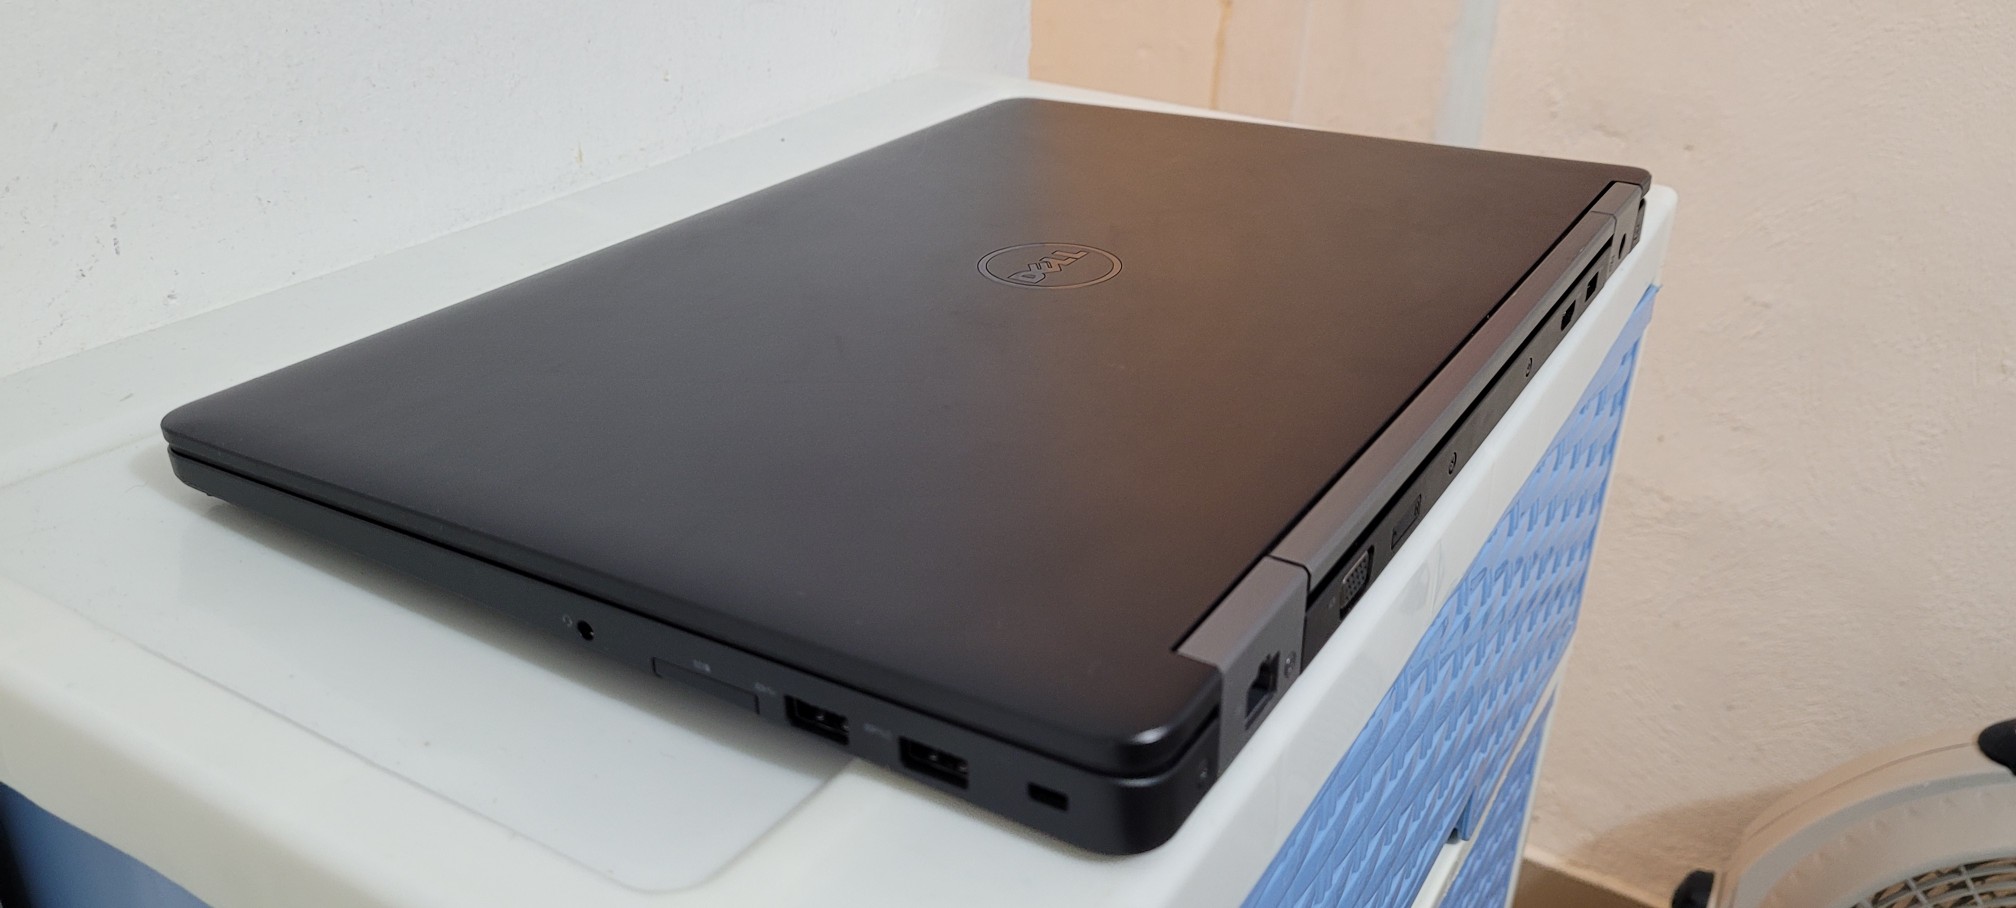 computadoras y laptops - Dell Gamer 17 Pulg Core i7 6ta Ram 16gb ddr4 Video intel 8gb Y Aty Radeon 2gb 2